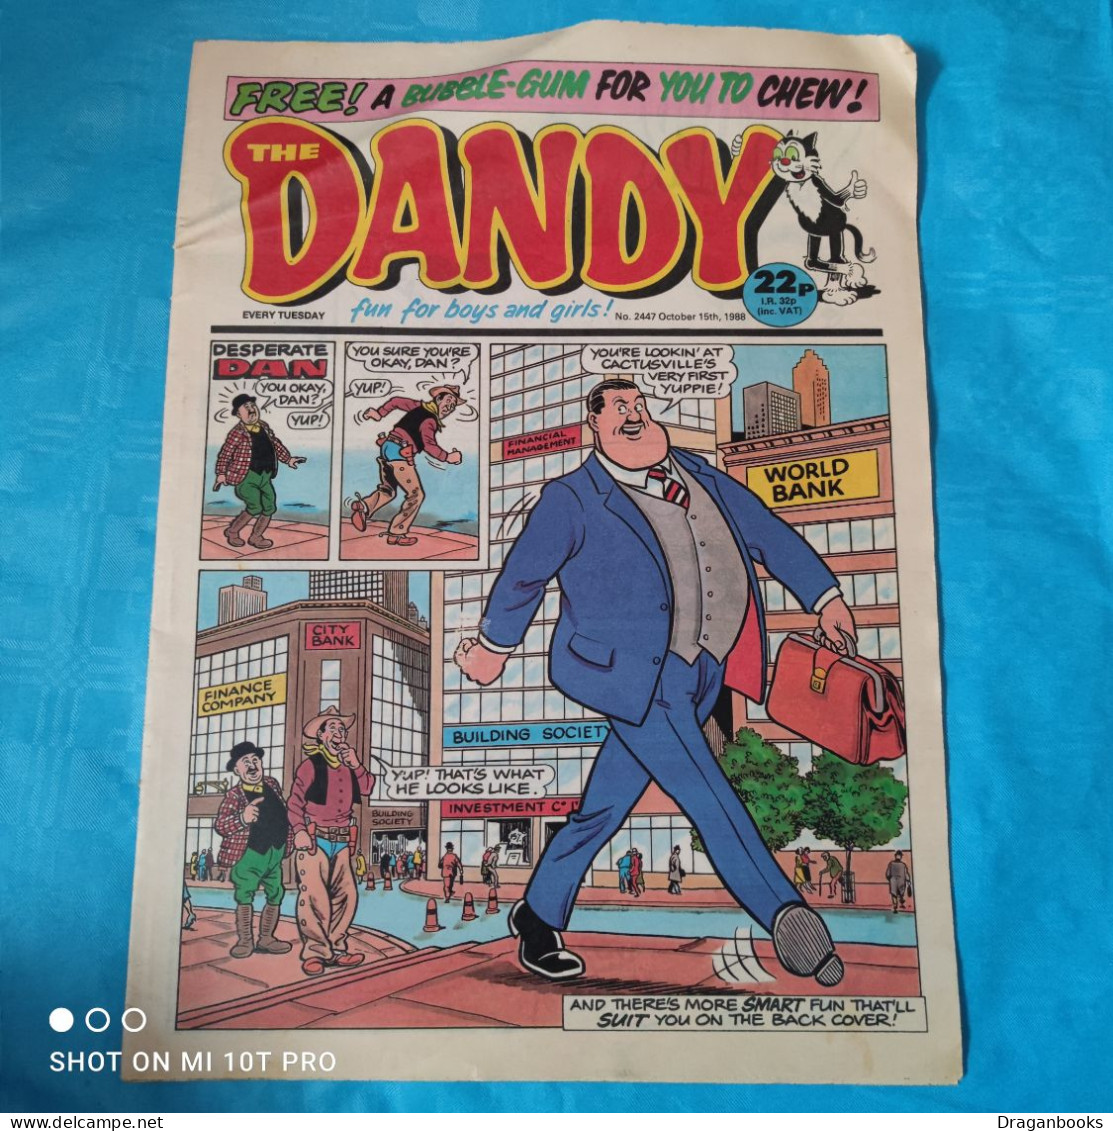 The Dandy No. 2447 - October 15th 1988 - Striptijdschriften